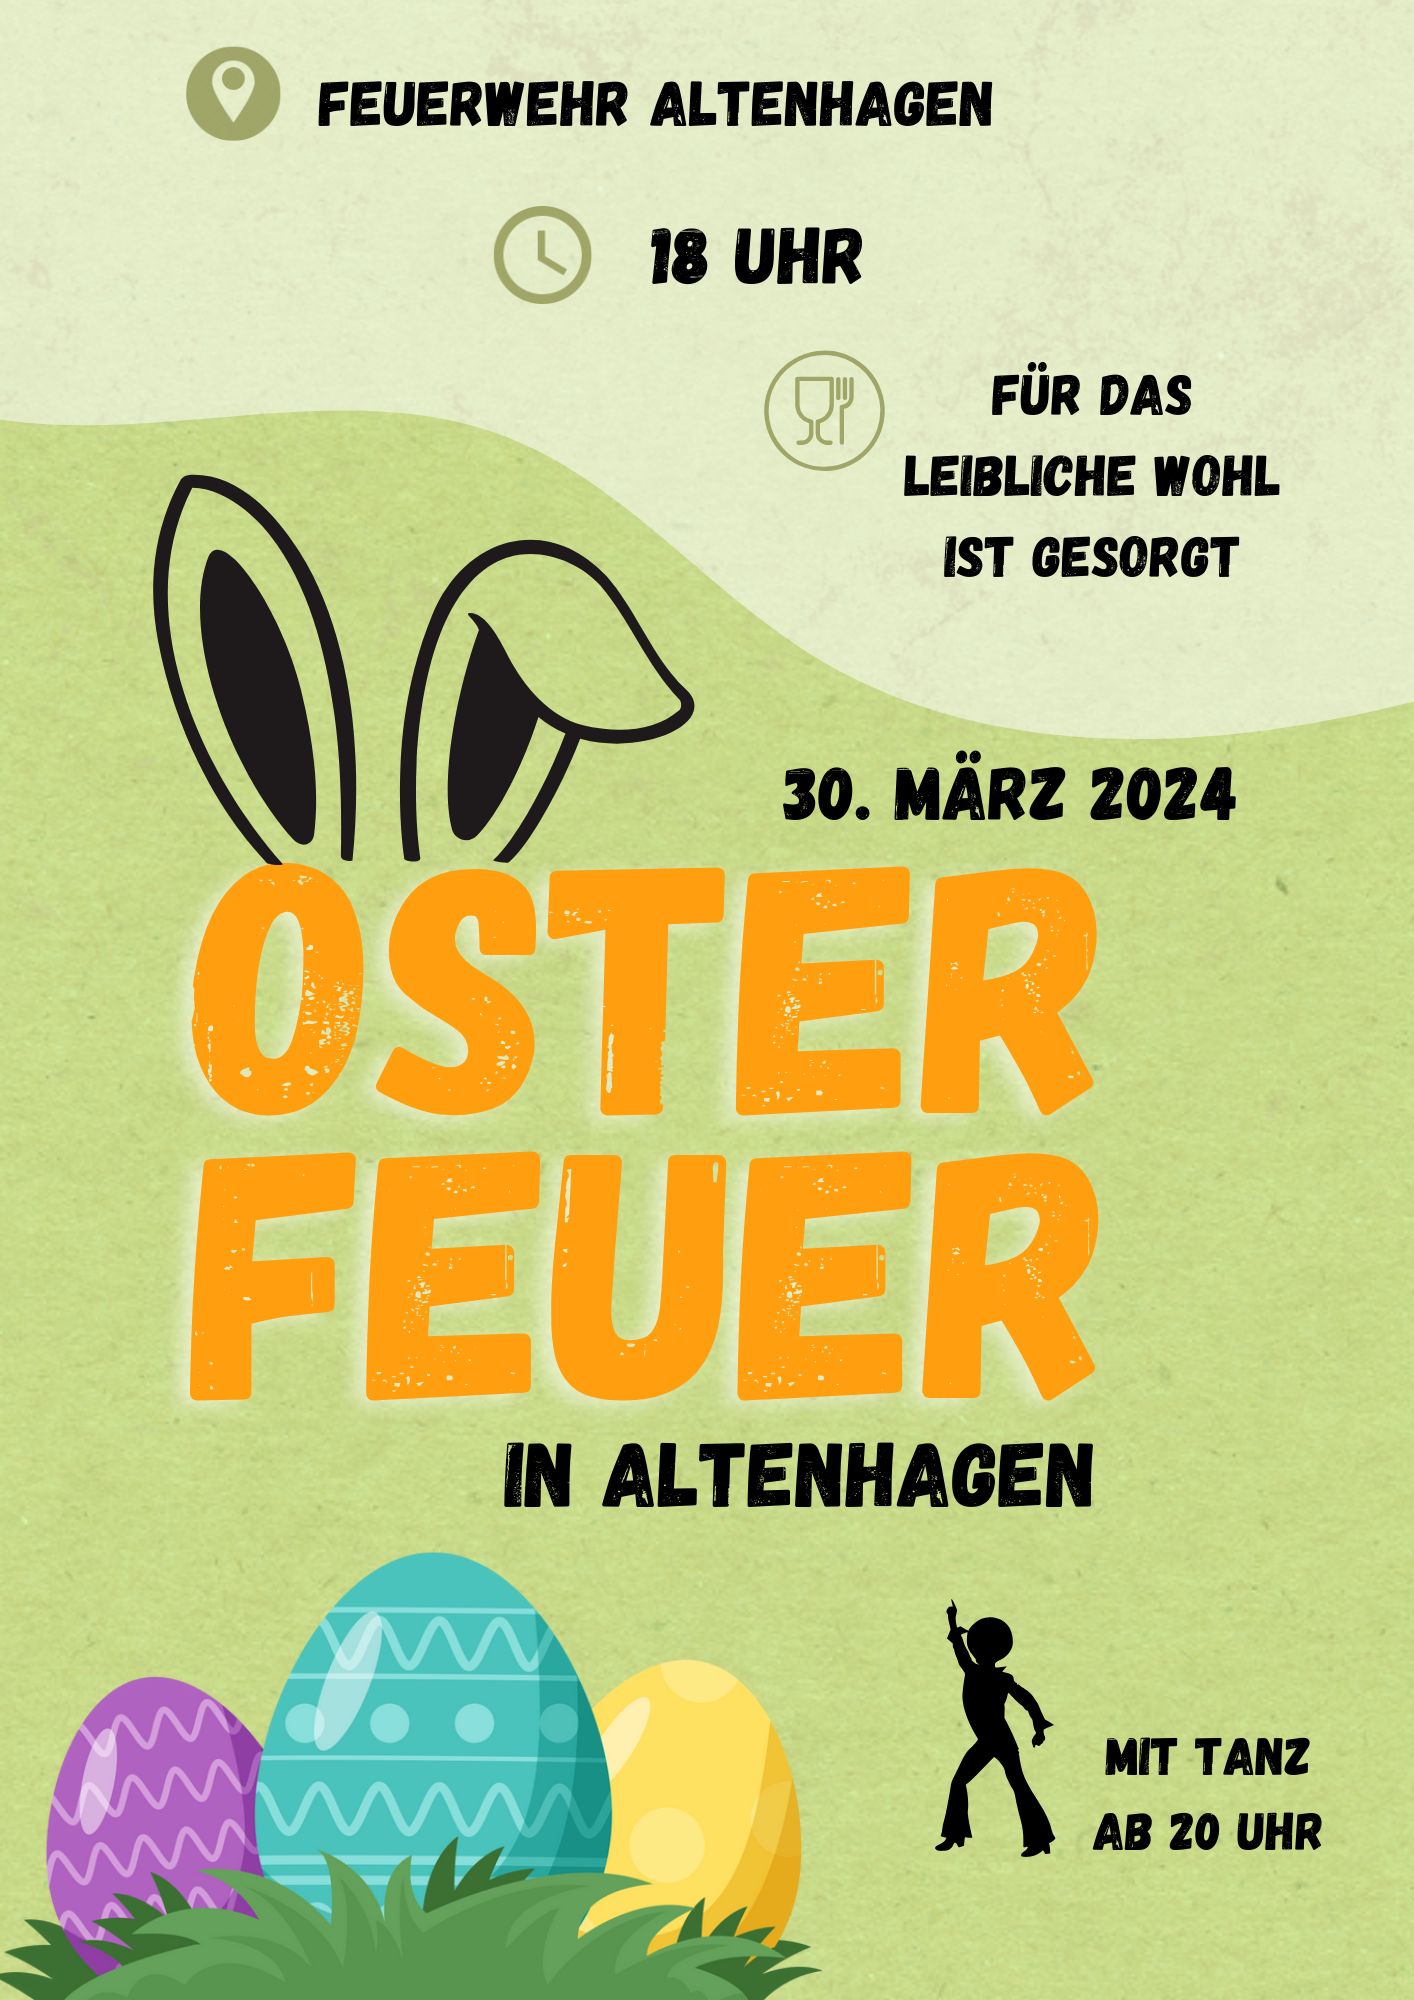 Osterfeuer FFW Altenhagen